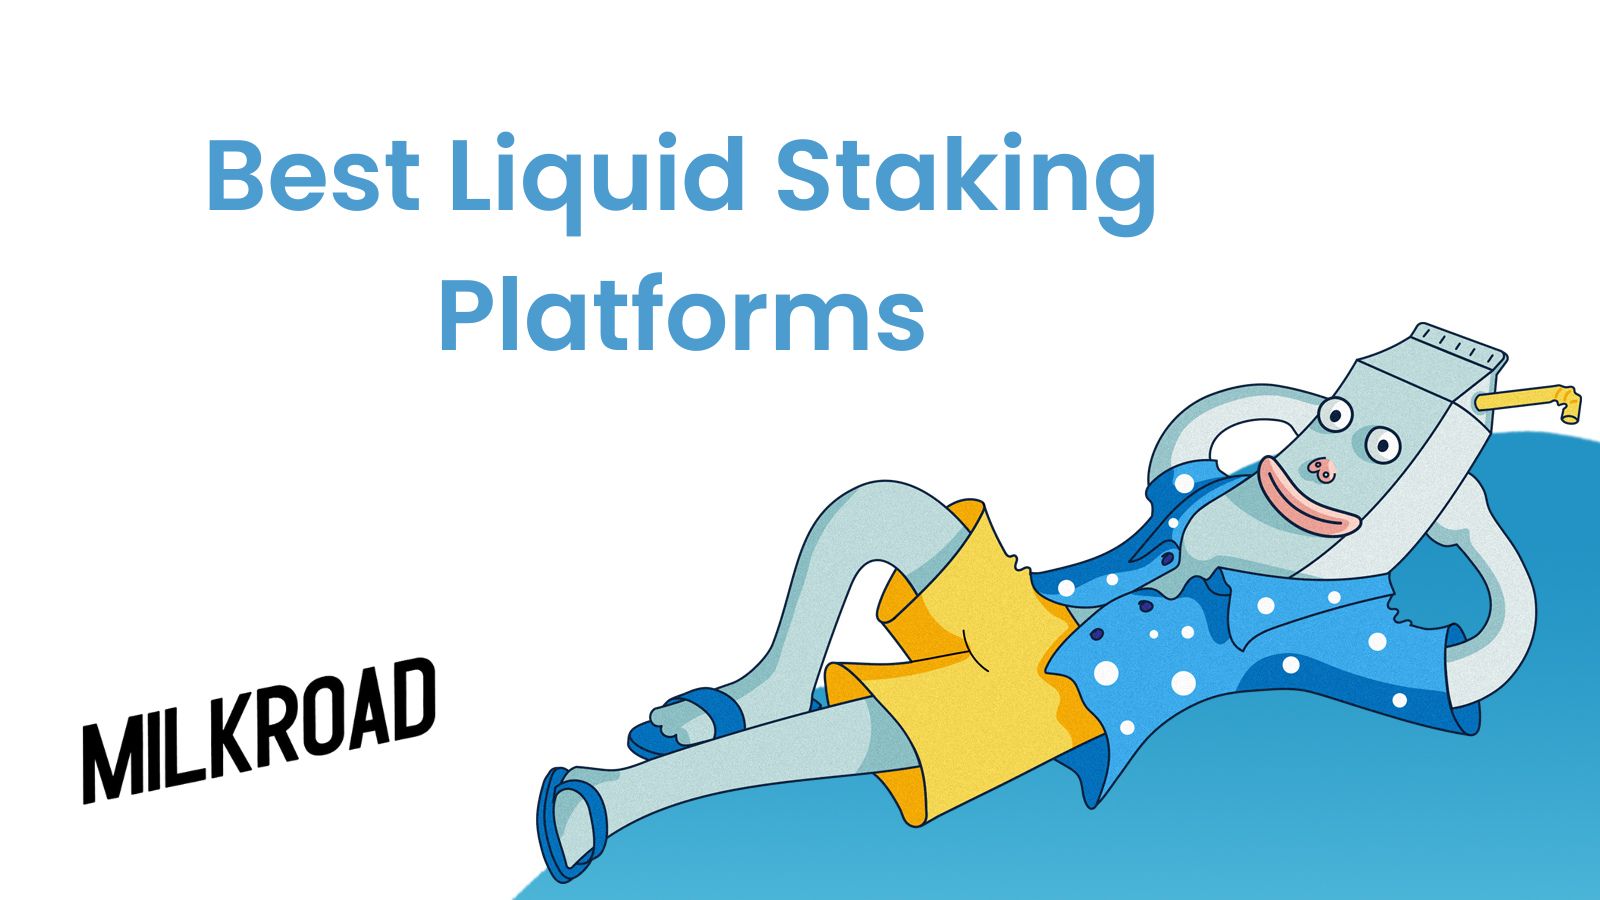 Best Liquid Staking Platforms